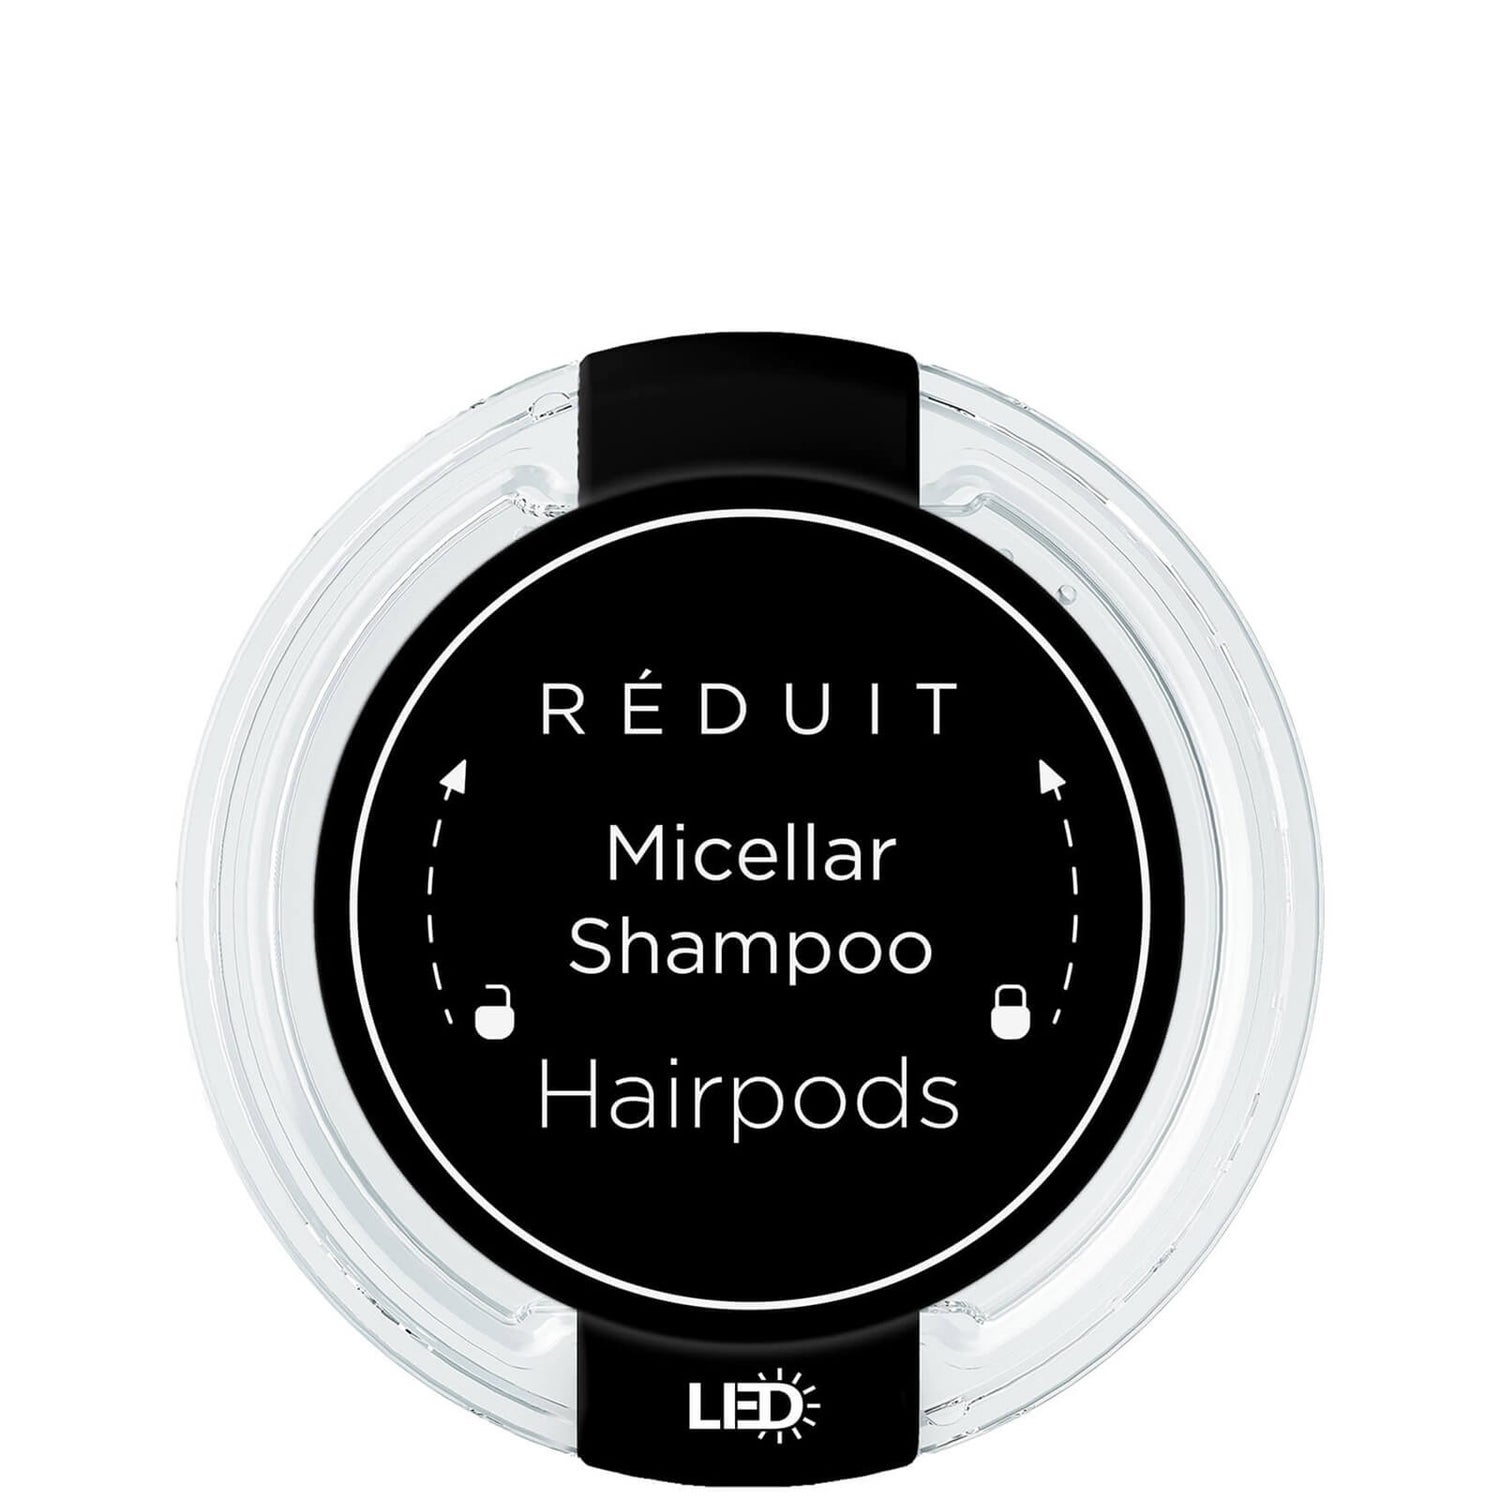 RÉDUIT Hairpods Micellar Shampoo LED